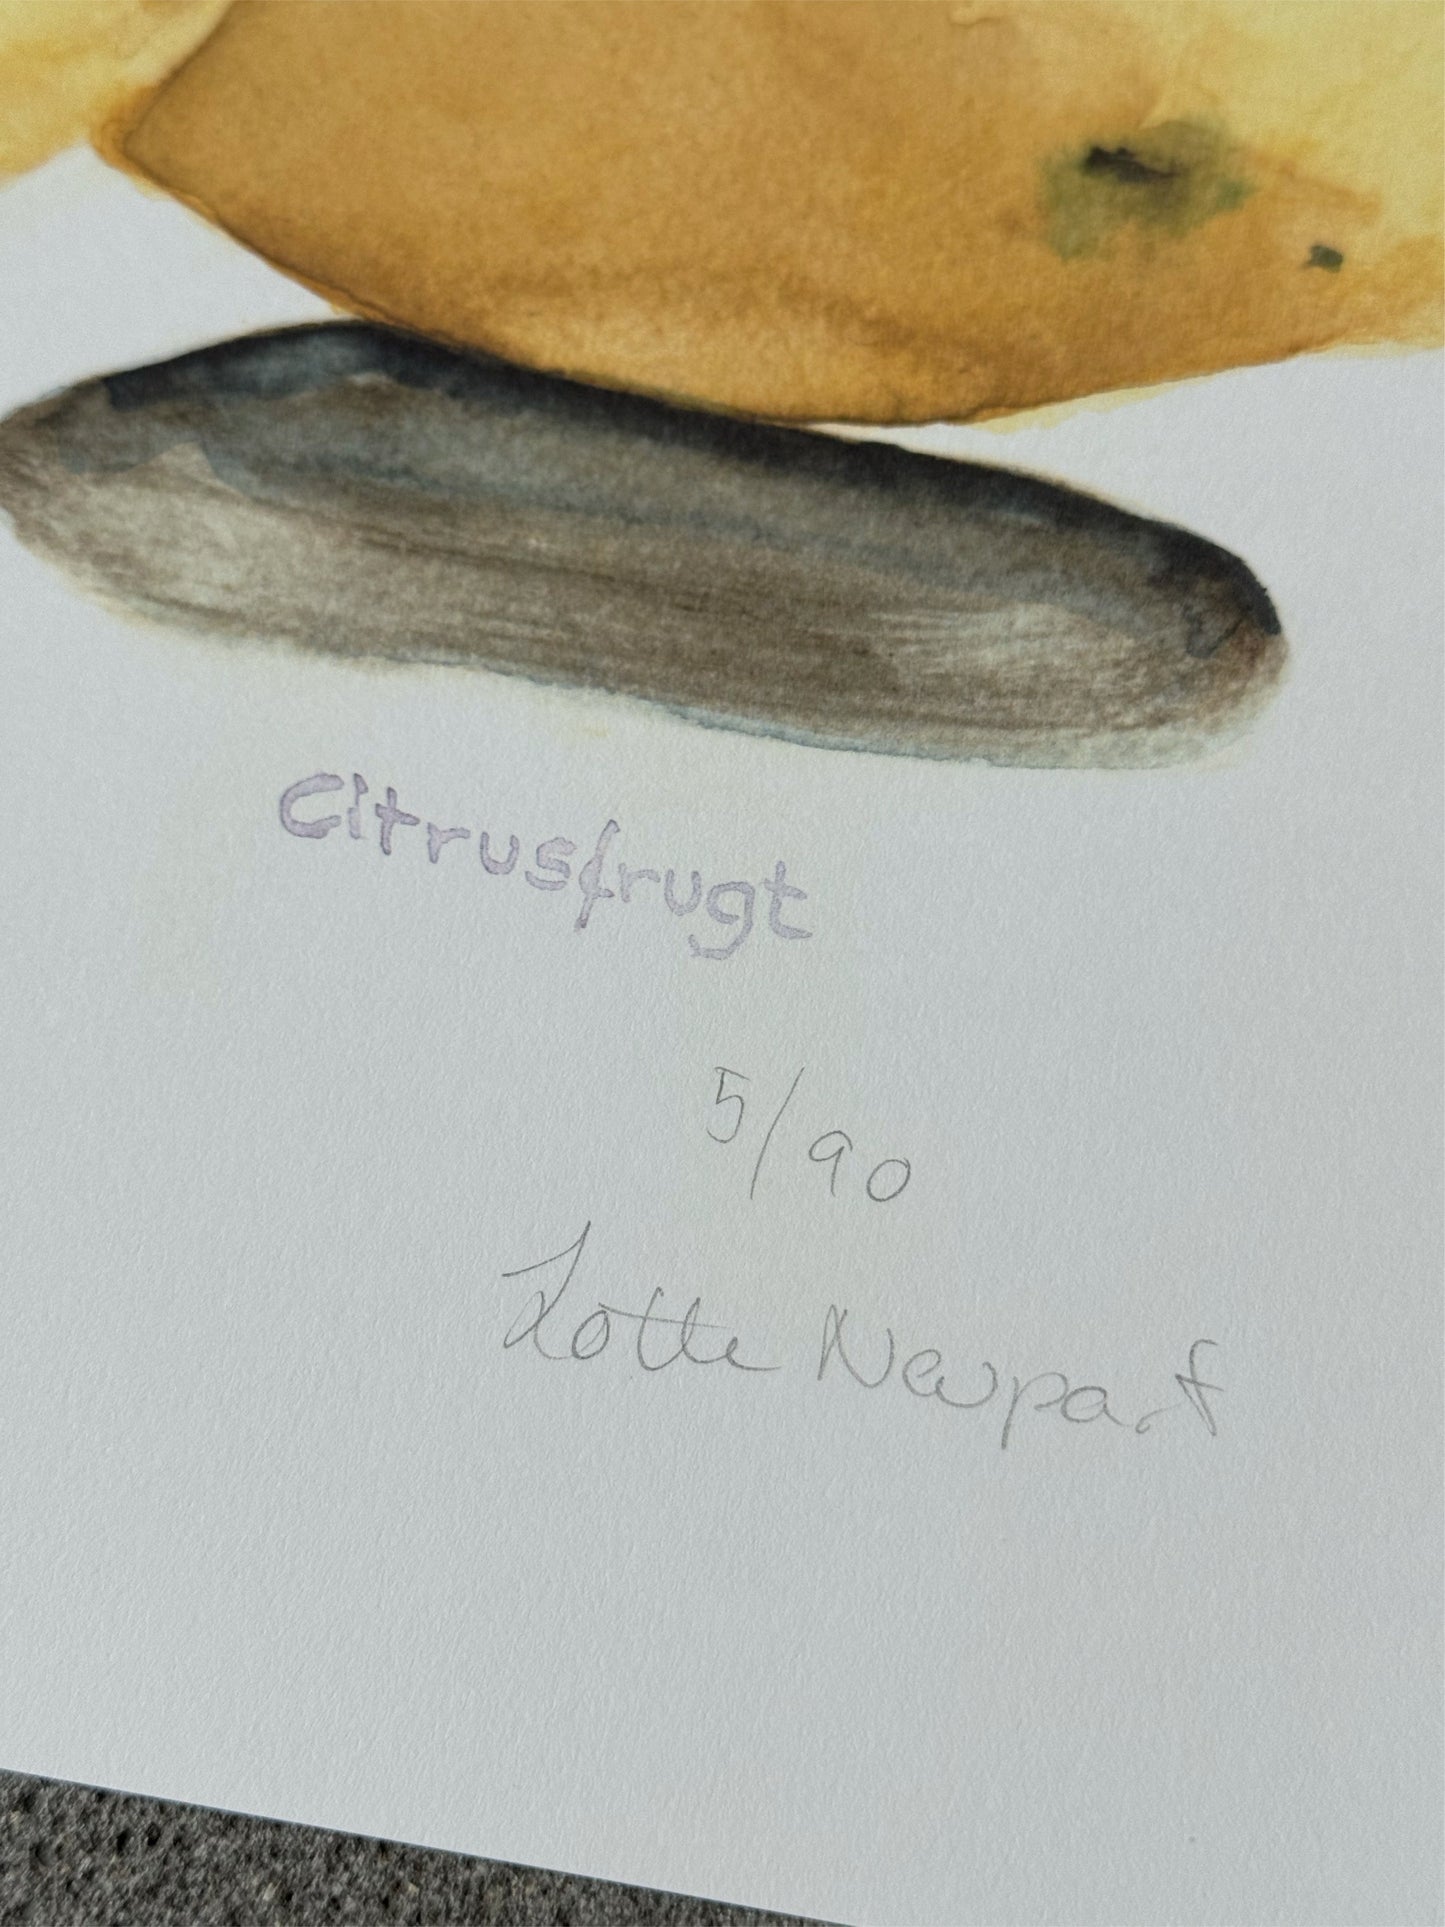 Citrusfrugt - Lotte Neupart